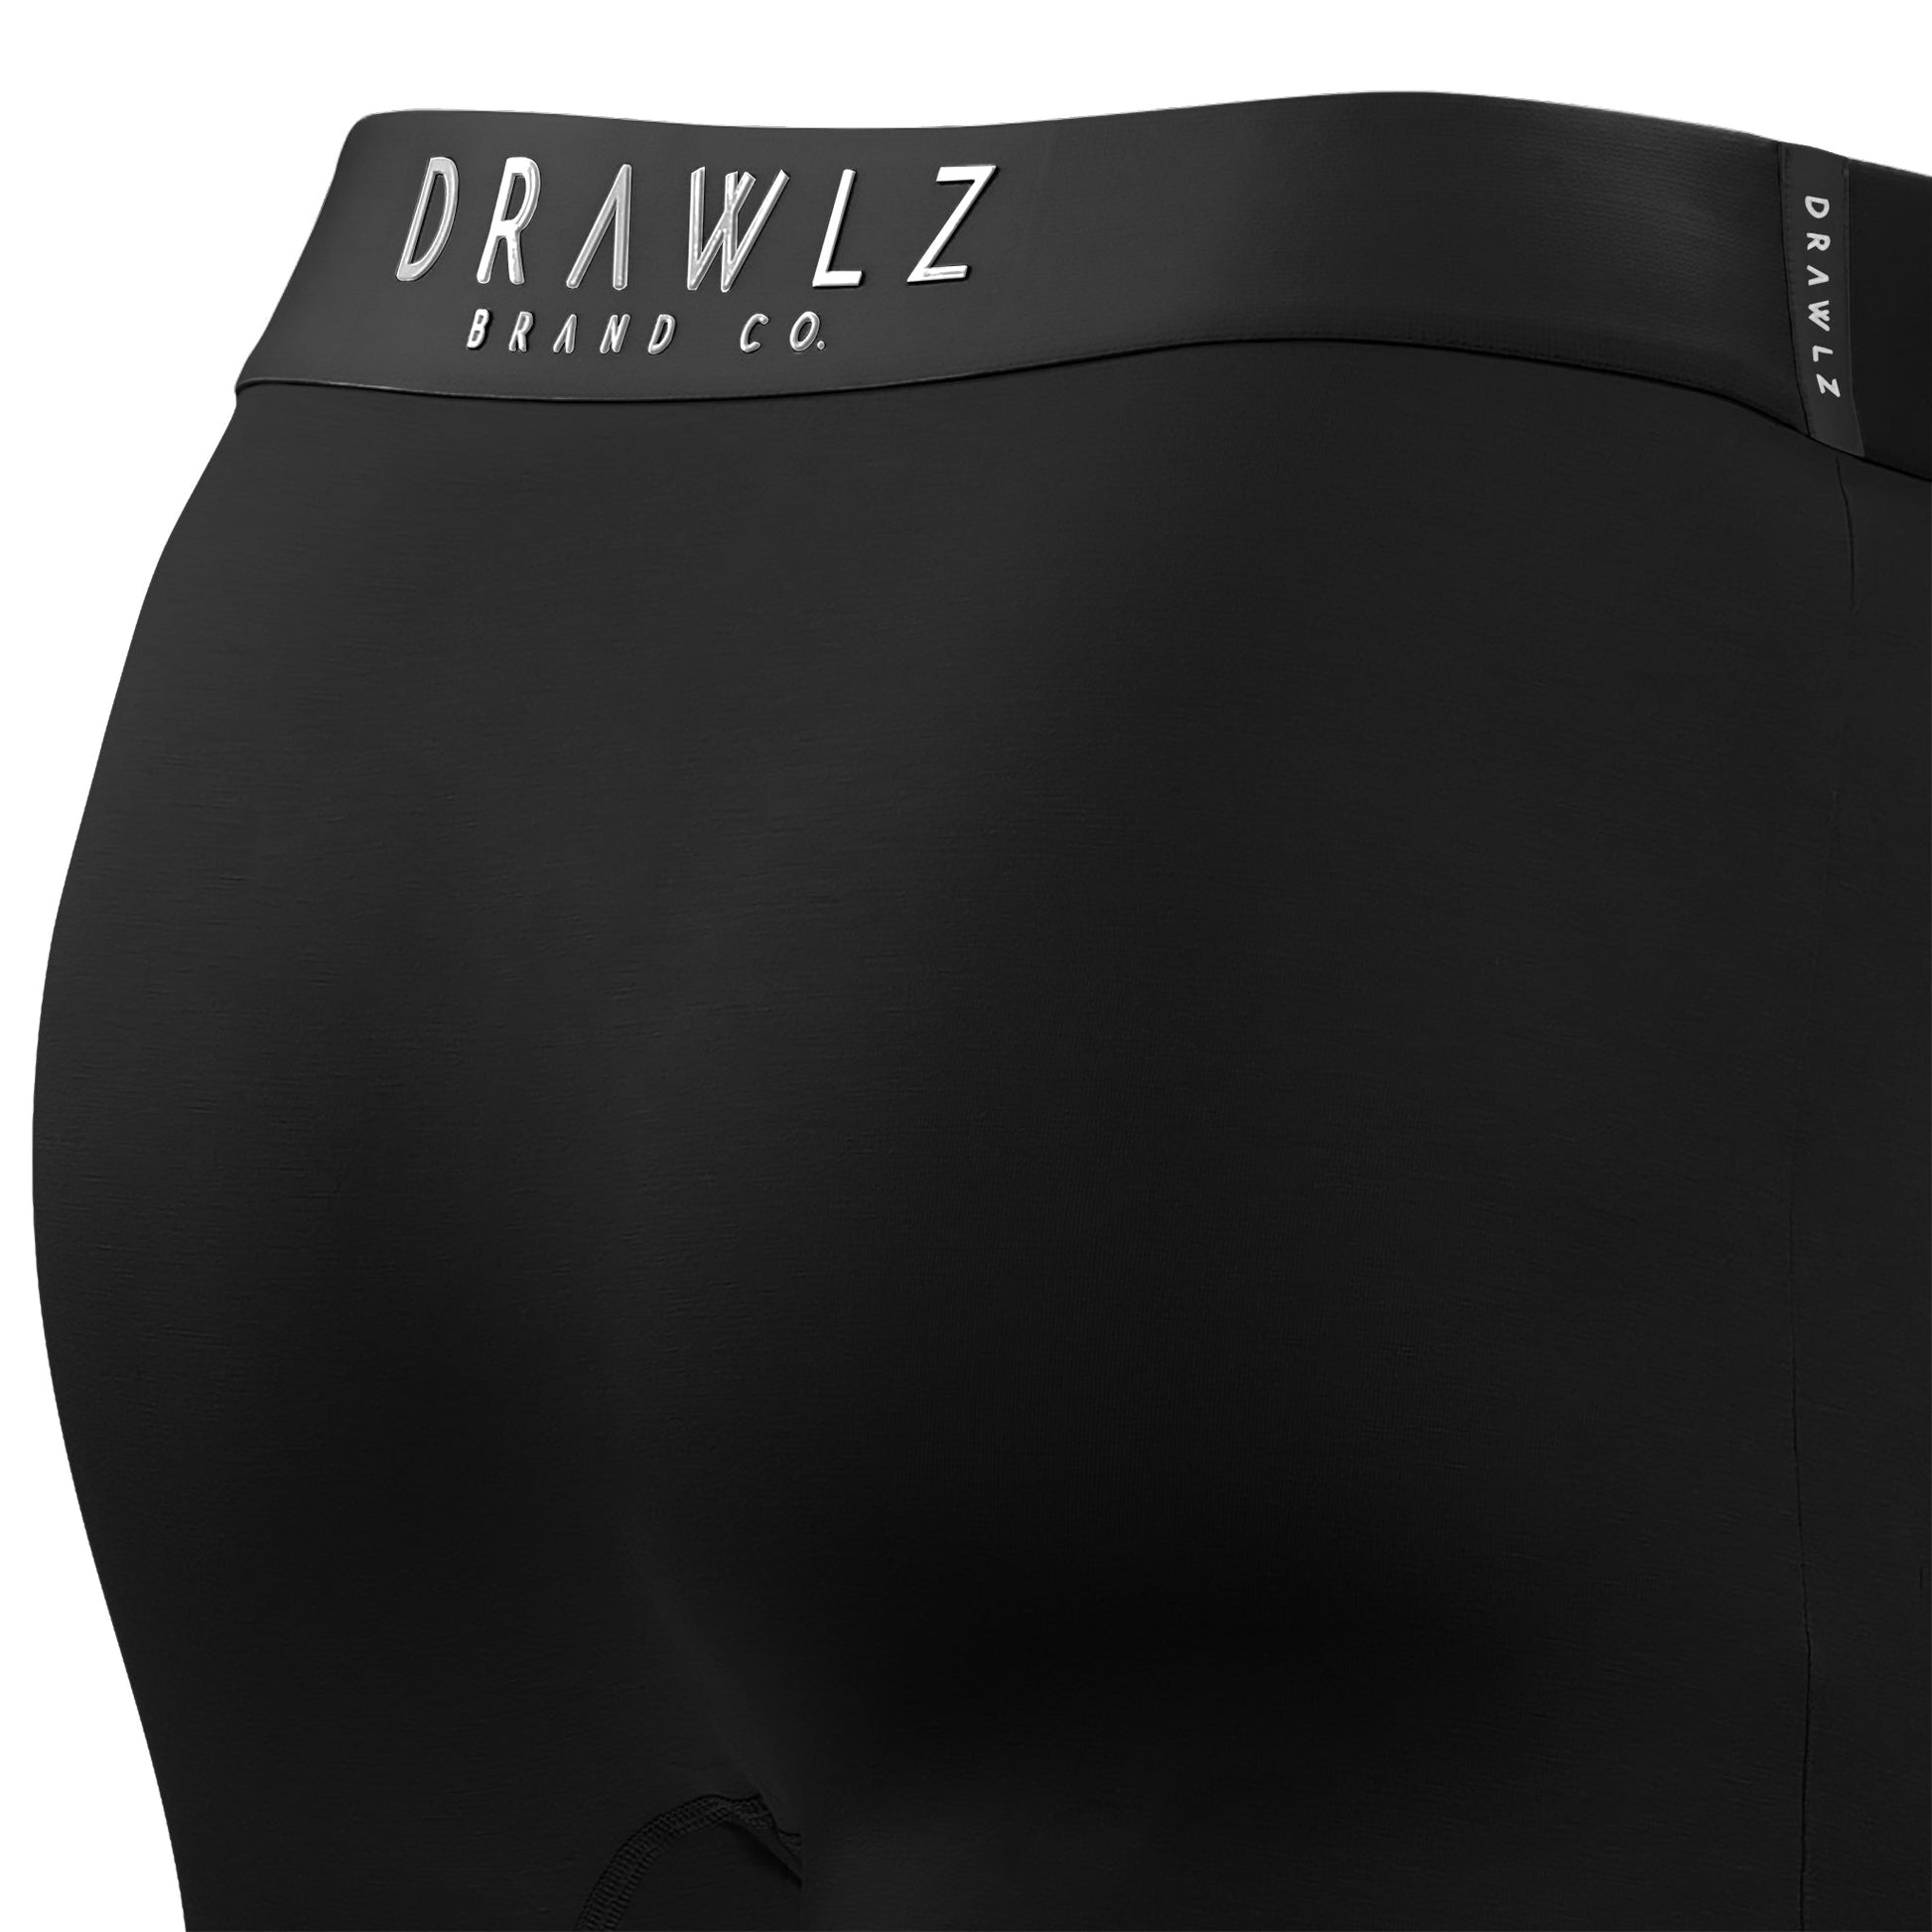 OriginalZ Black Men's Boxer Brief Underwear – Drawlz Brand Co.